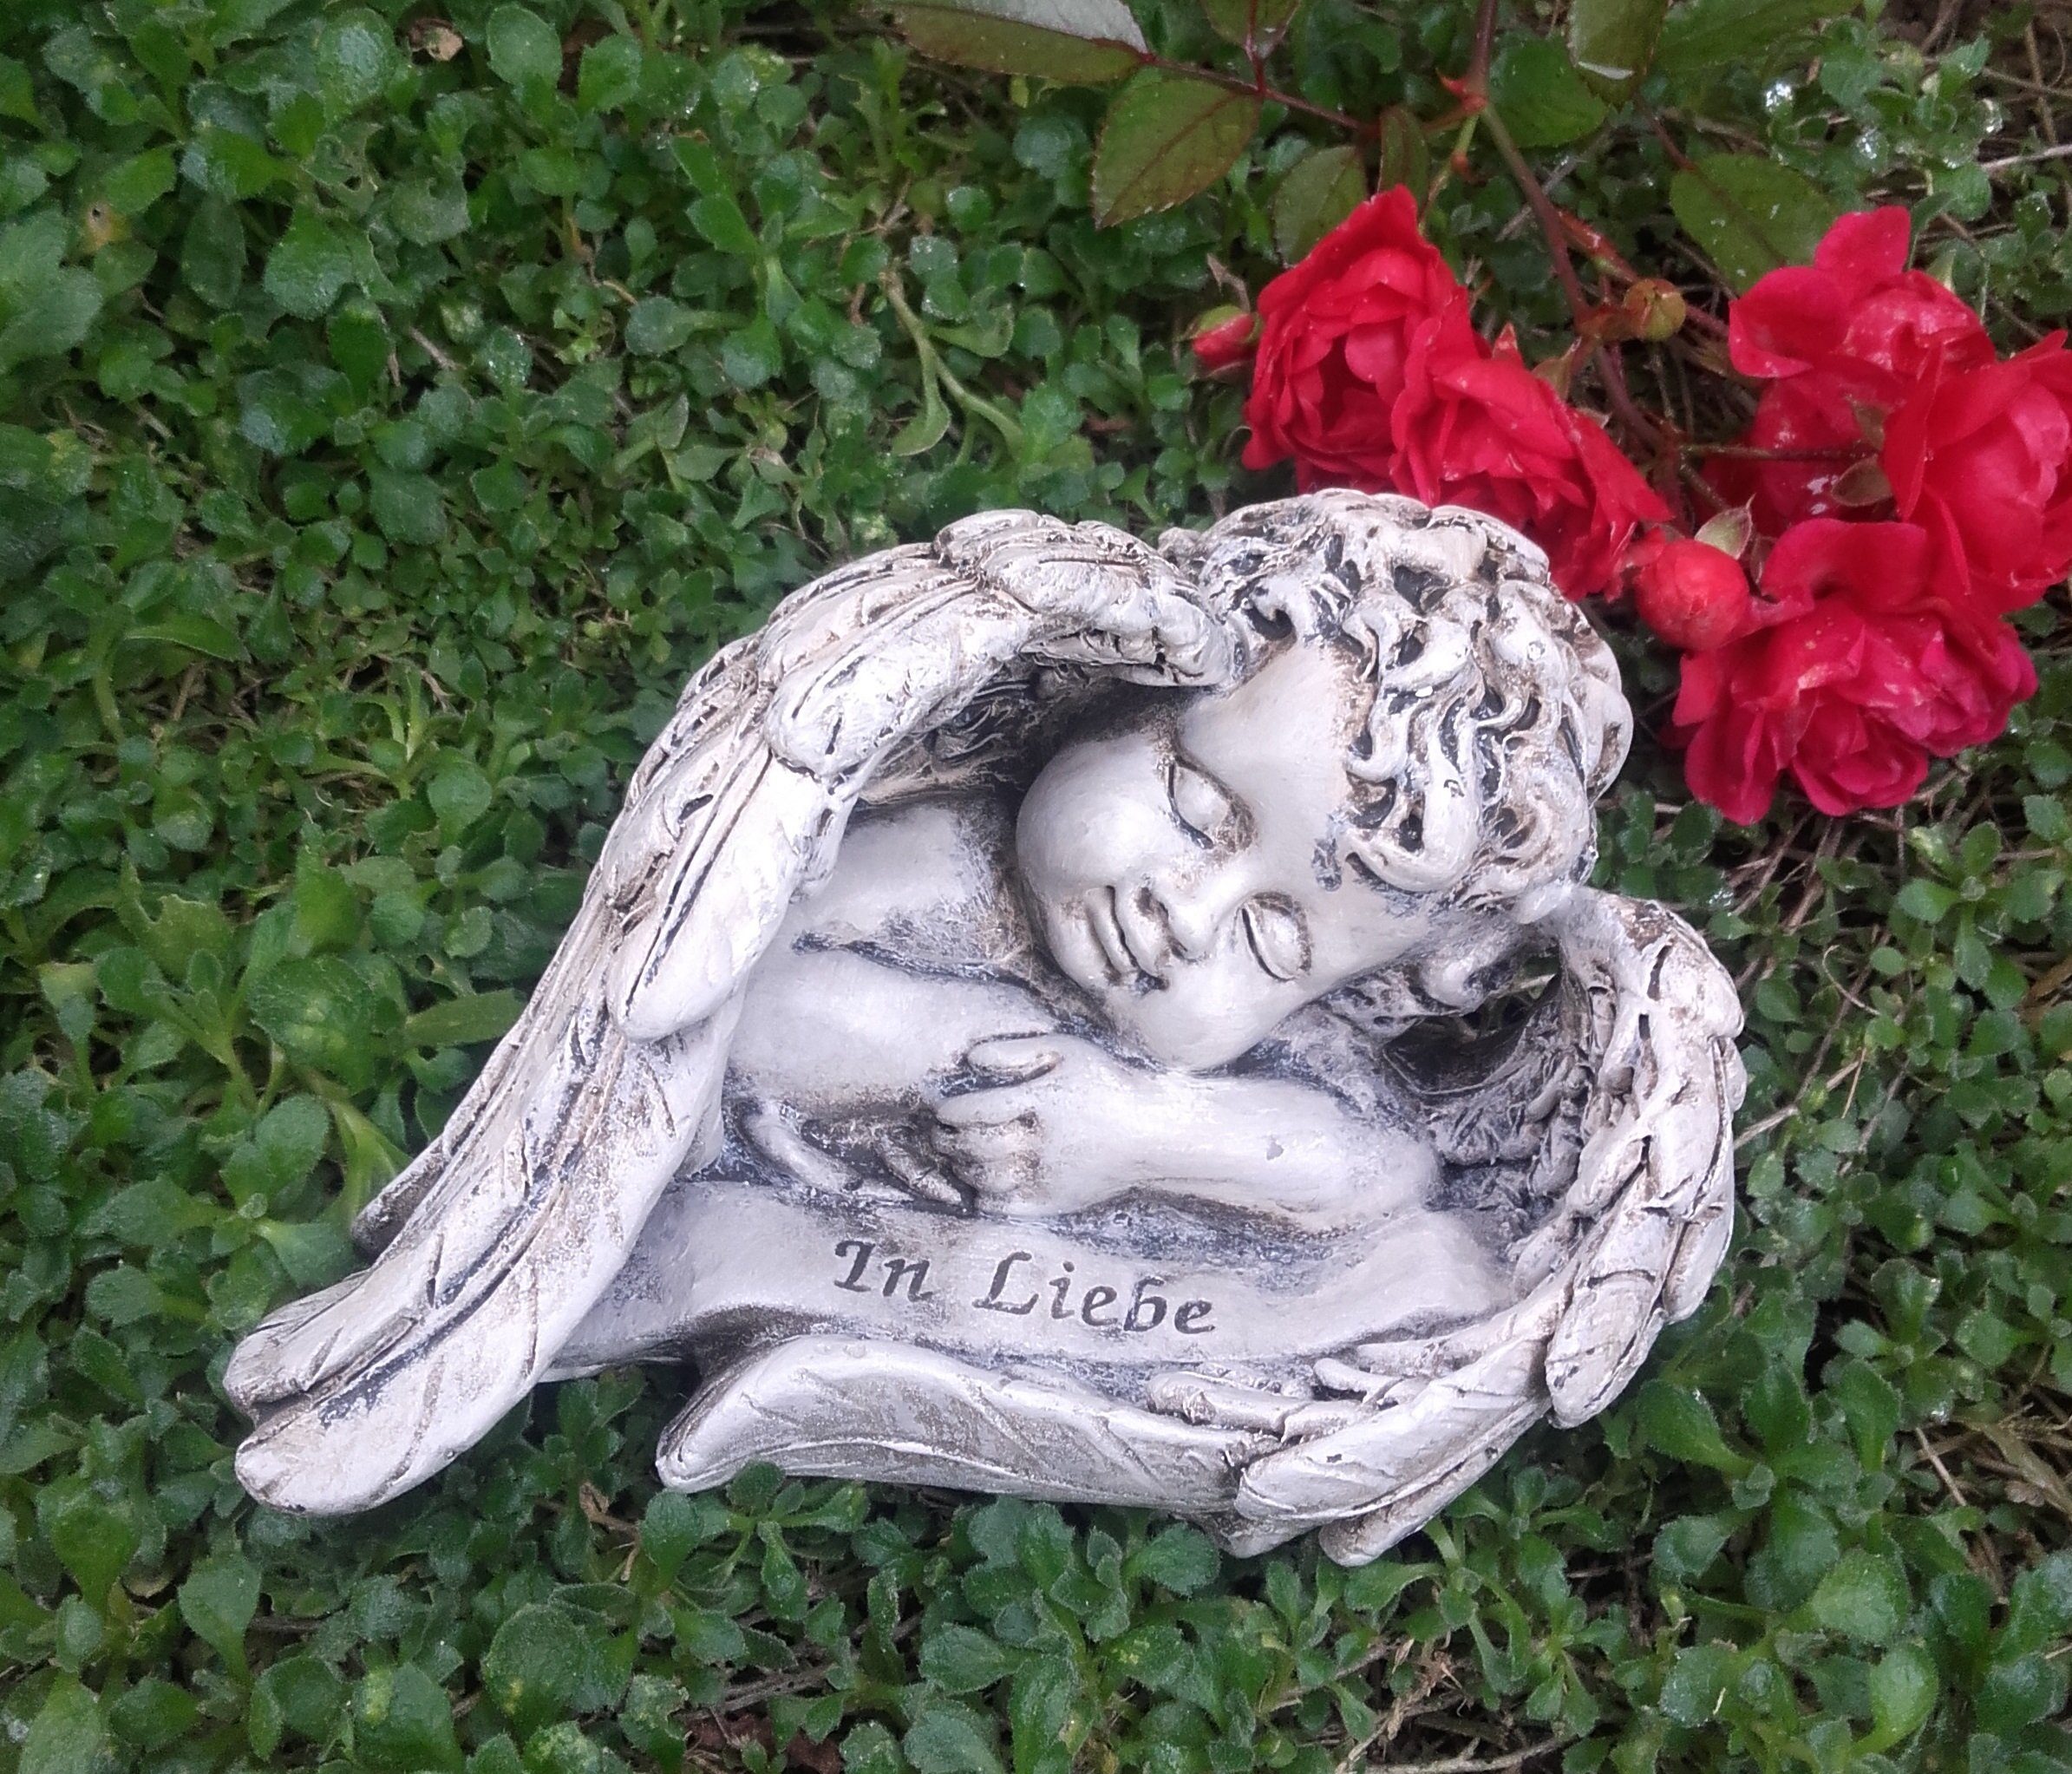 Radami Gartenfigur Engel Gedenkstein Grabengel "In Liebe" Grabschmuck